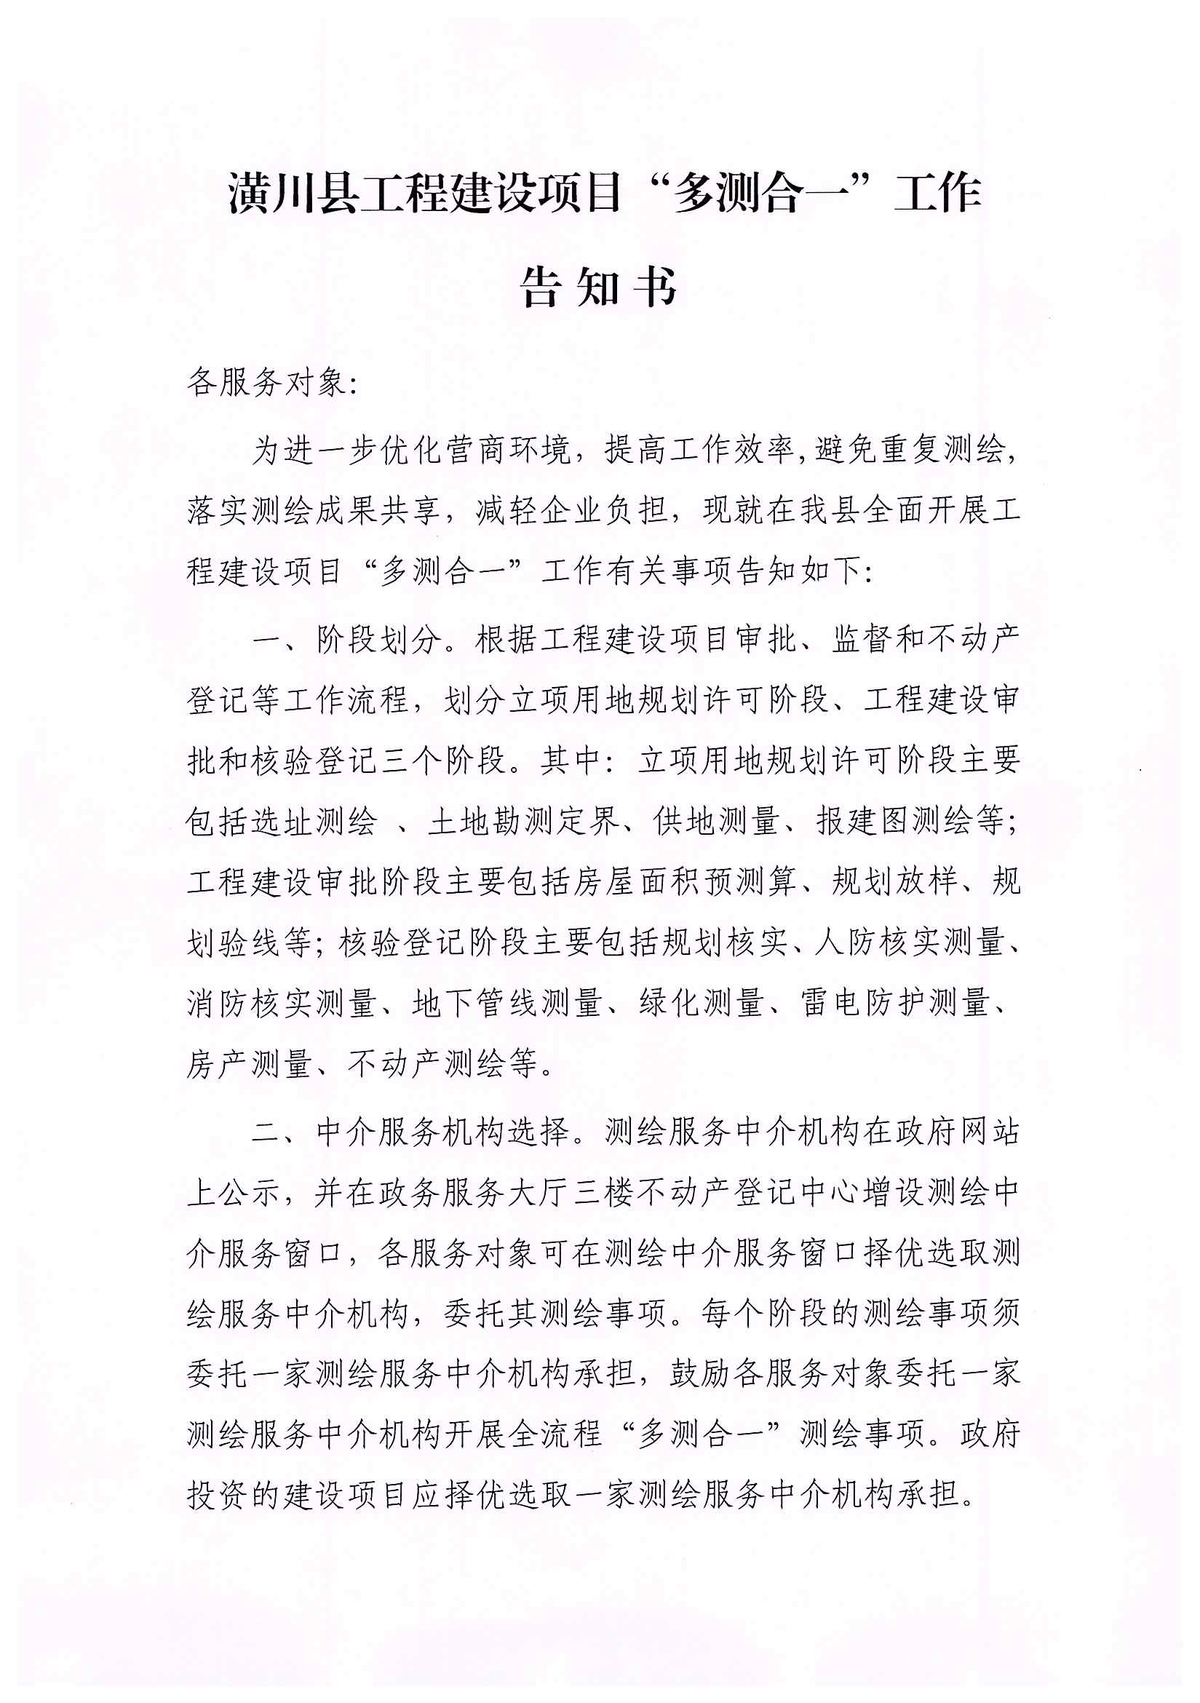 潢川县自然资源局关于公开选用测绘服务中介机构的公示